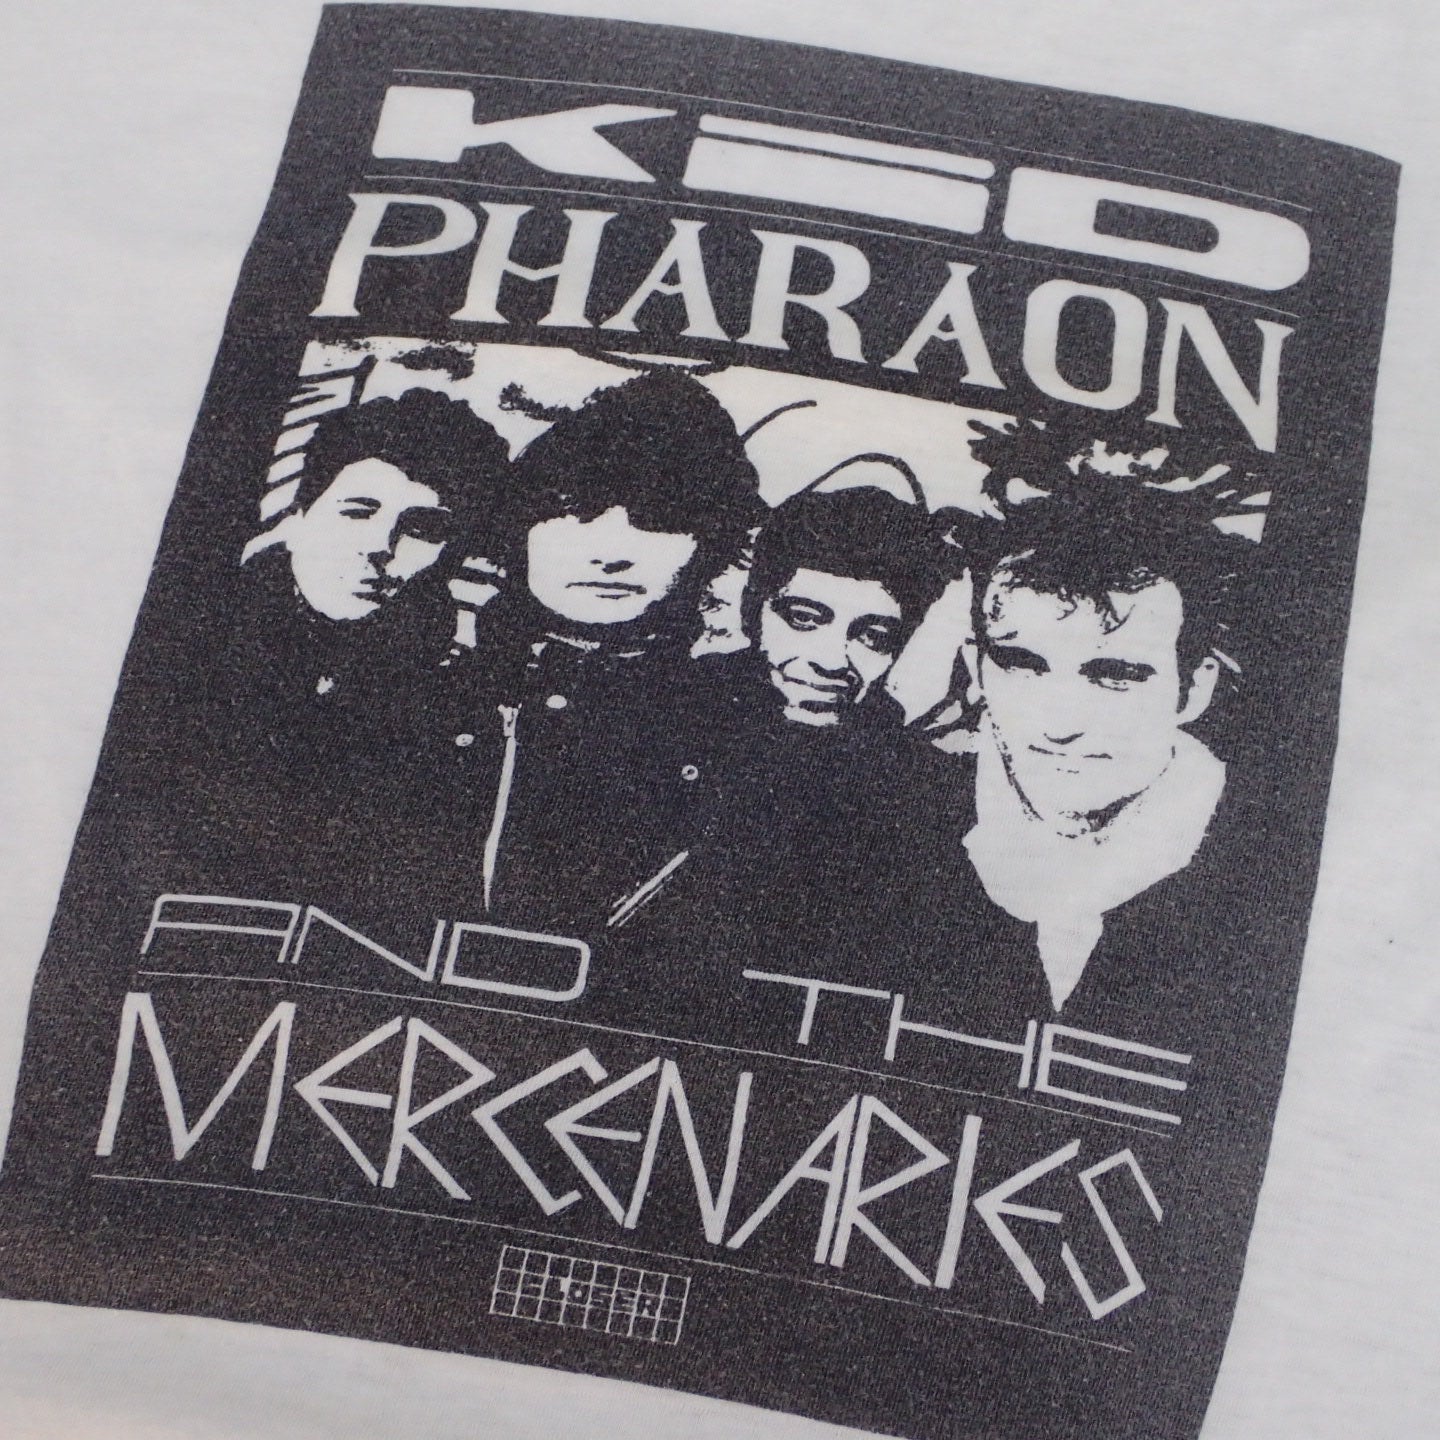 90s Kid Pharaon And The Mercenaries " Tour Promo Tee"